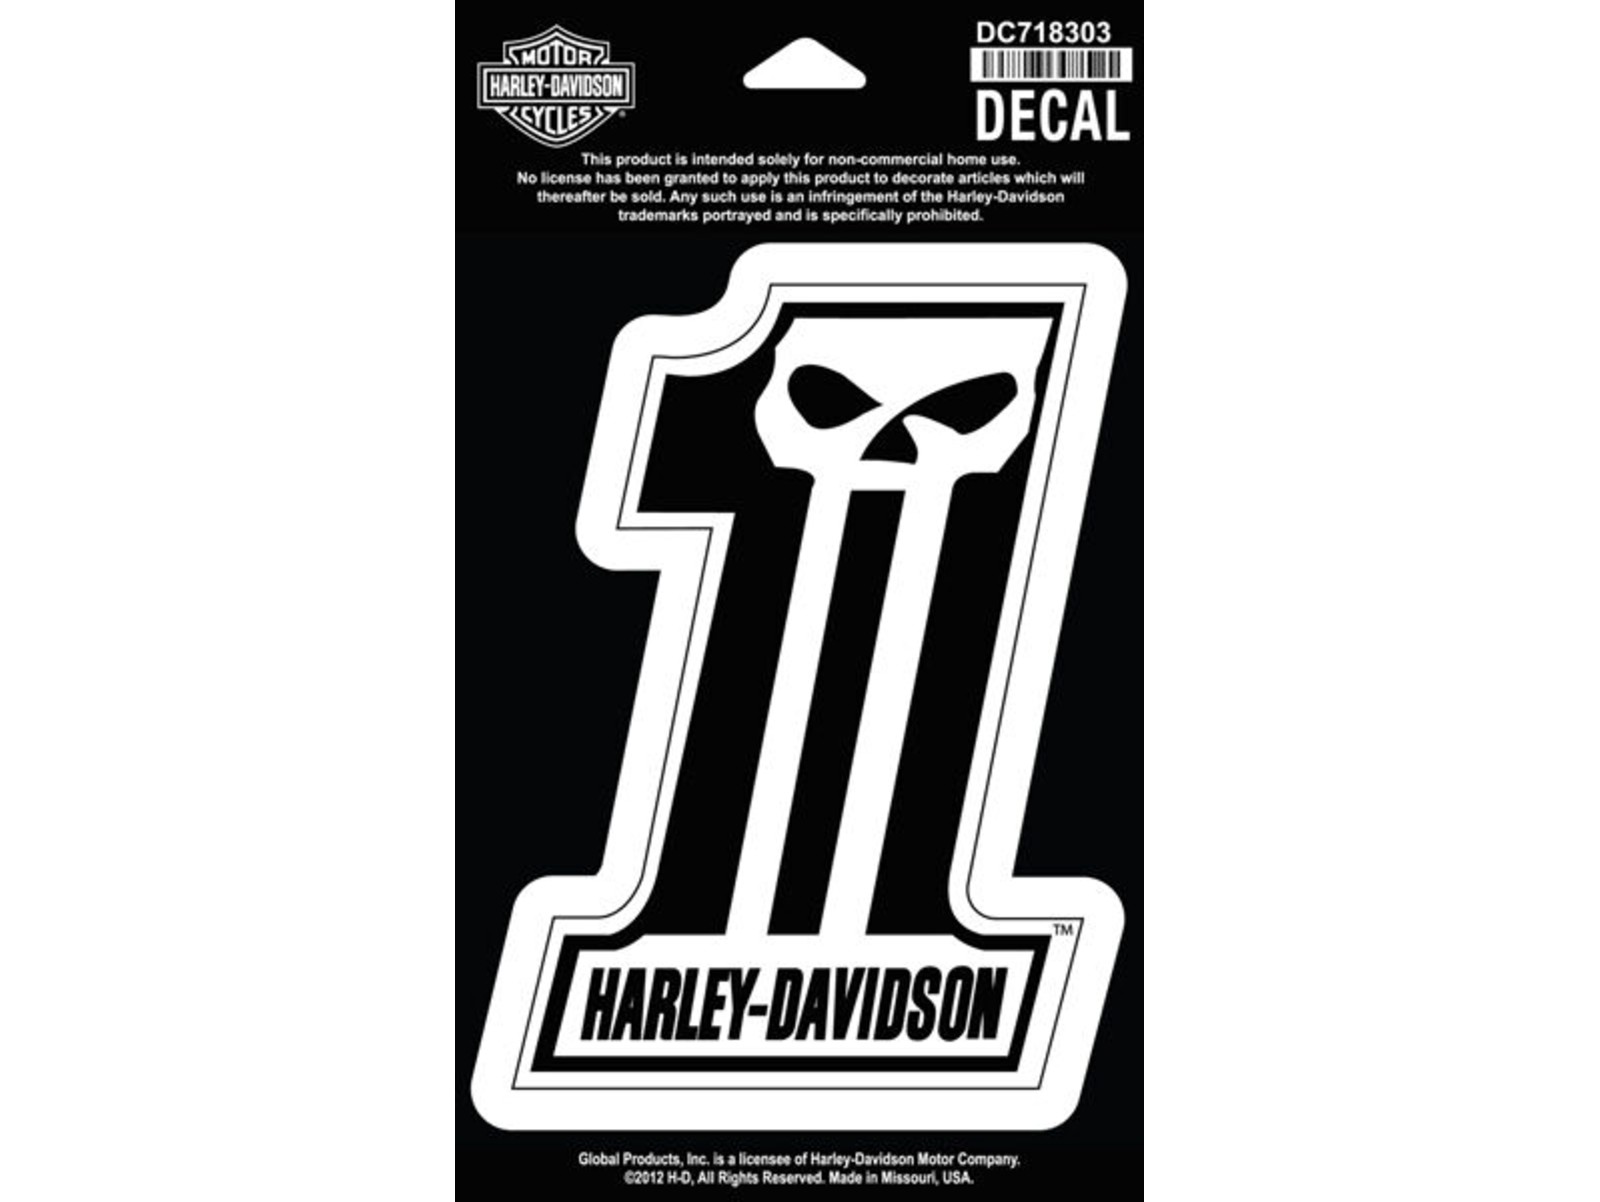 Pegatina Harley Davidson 1 Skull Dc718303 Number One